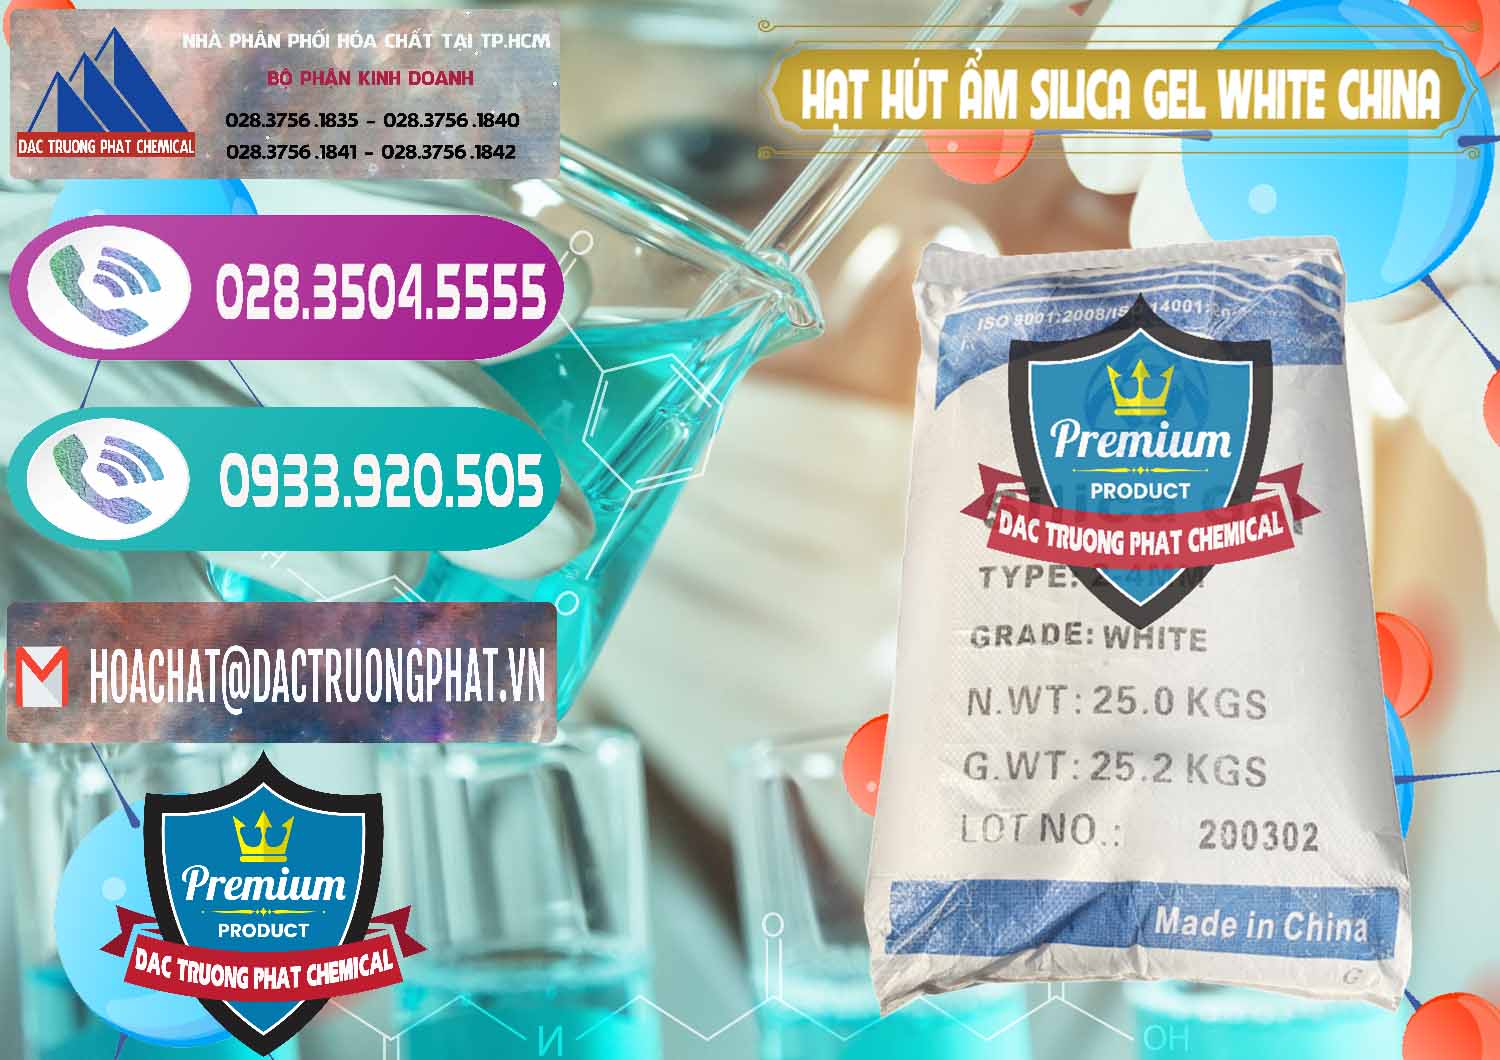 Công ty bán _ phân phối Hạt Hút Ẩm Silica Gel White Trung Quốc China - 0297 - Kinh doanh & phân phối hóa chất tại TP.HCM - hoachatxulynuoc.com